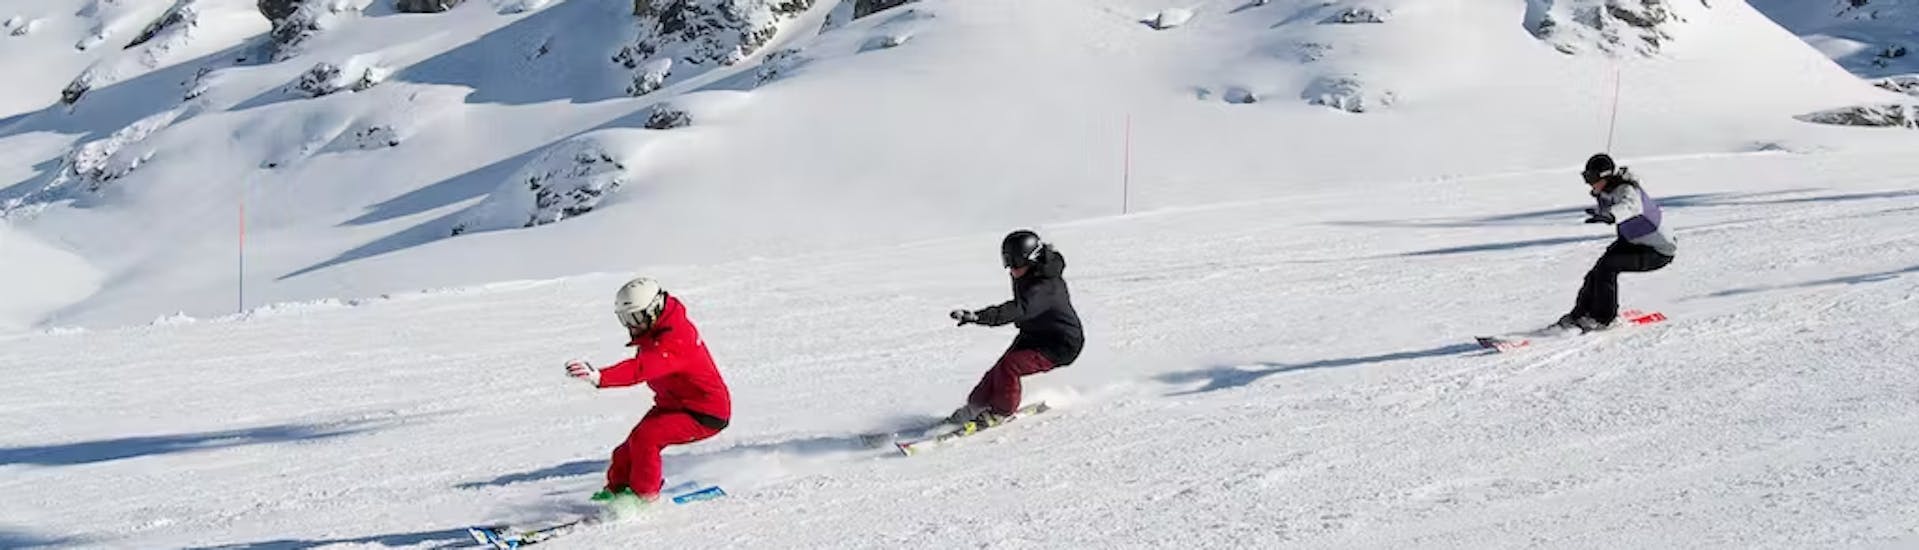 Cours de ski pour adolescents (14-18 ans) pour skieurs avancés.